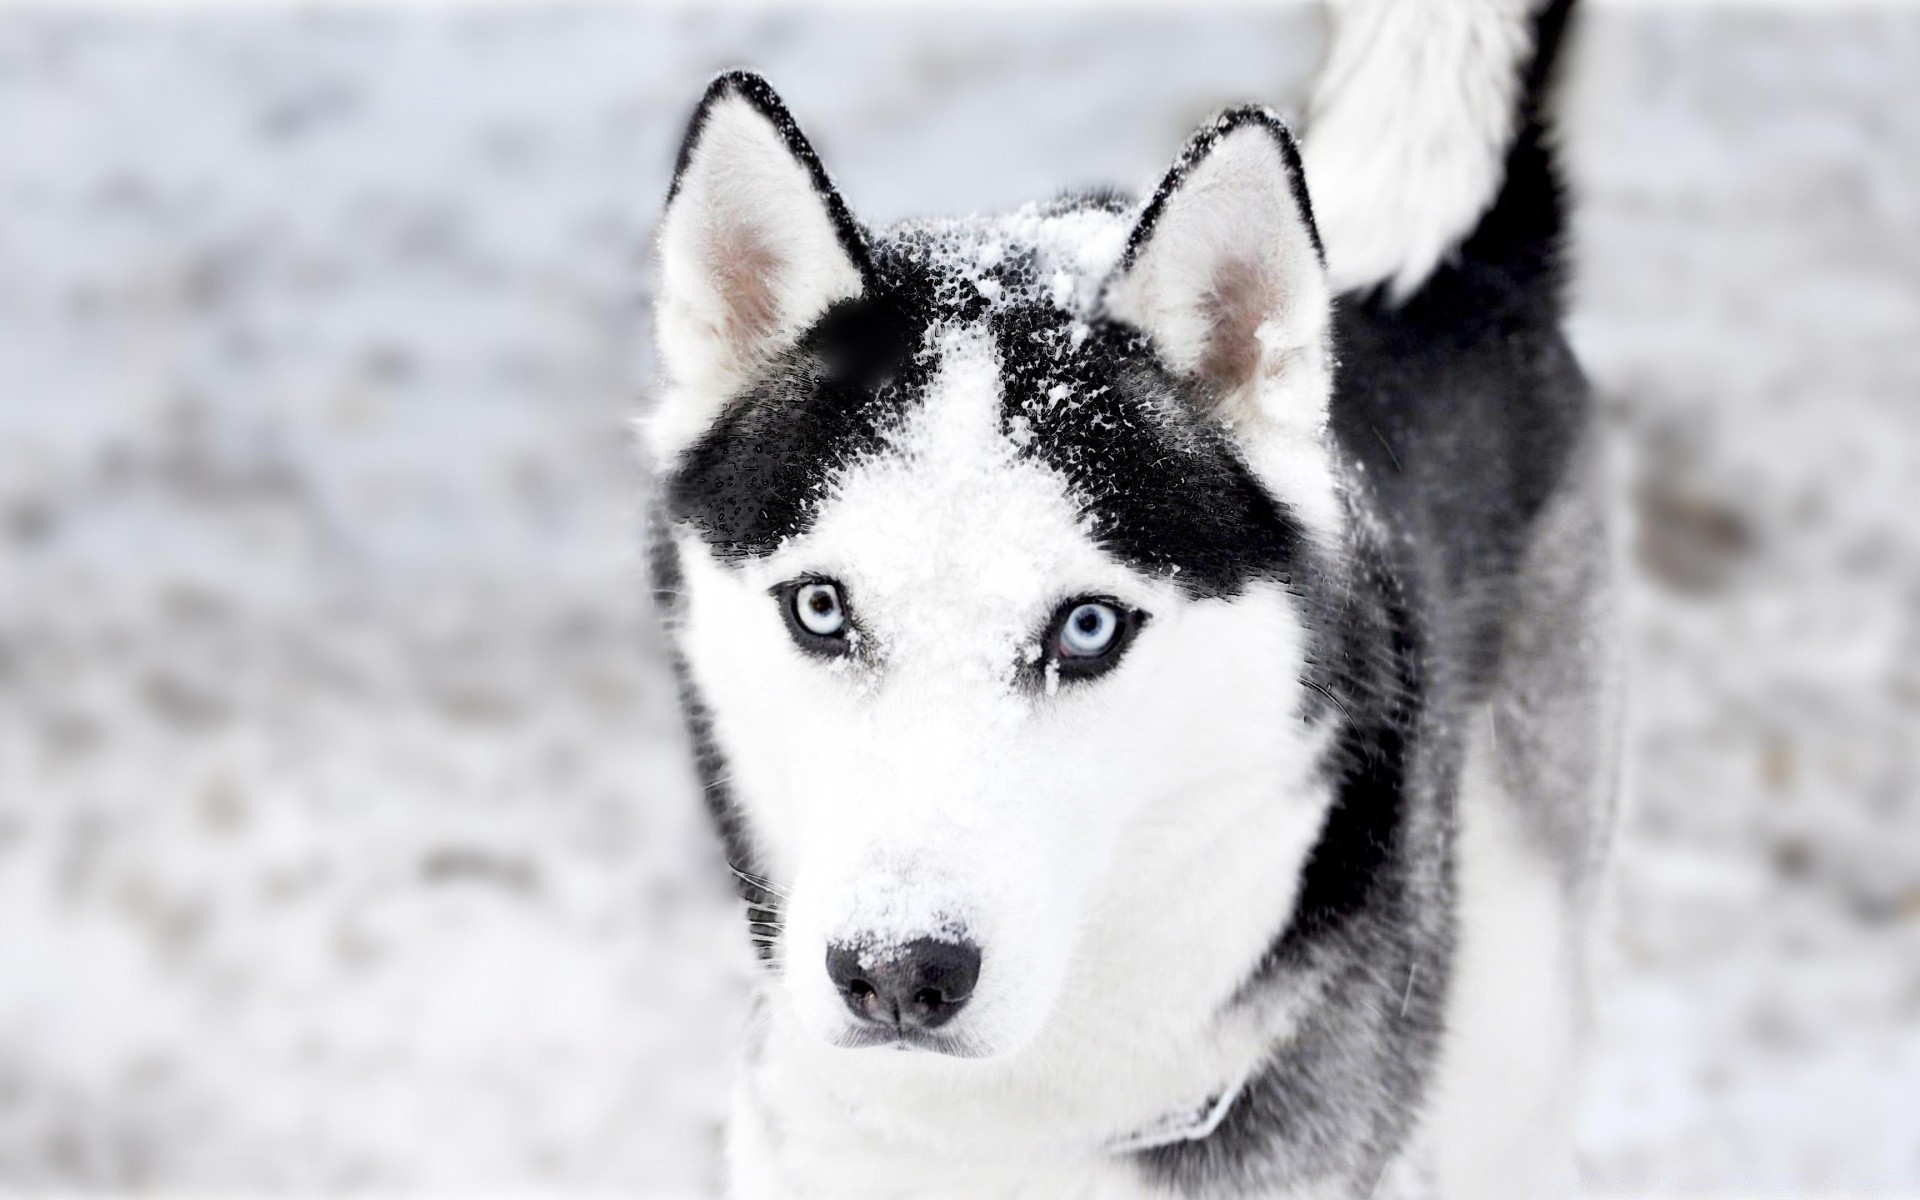 собаки собака снег зима кинолог морозный милые волк холодная портрет млекопитающее животное пэт санки один мех полярный природа просмотр глаз